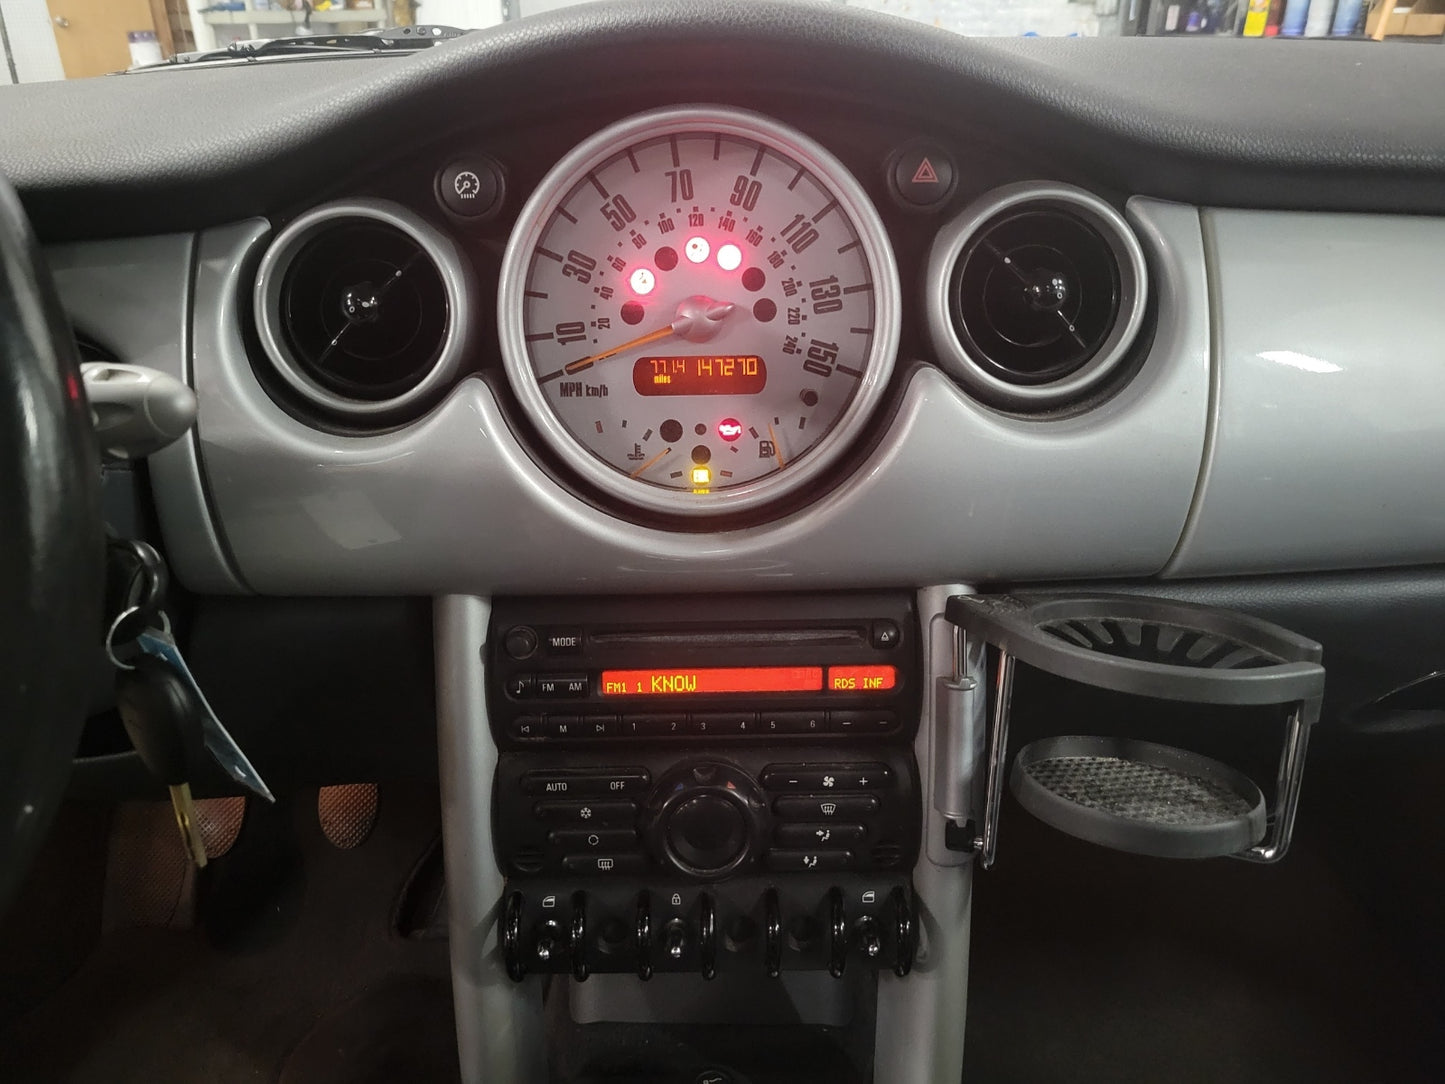 2002 MINI Cooper, New Parts Car (October 2022) Stk #336